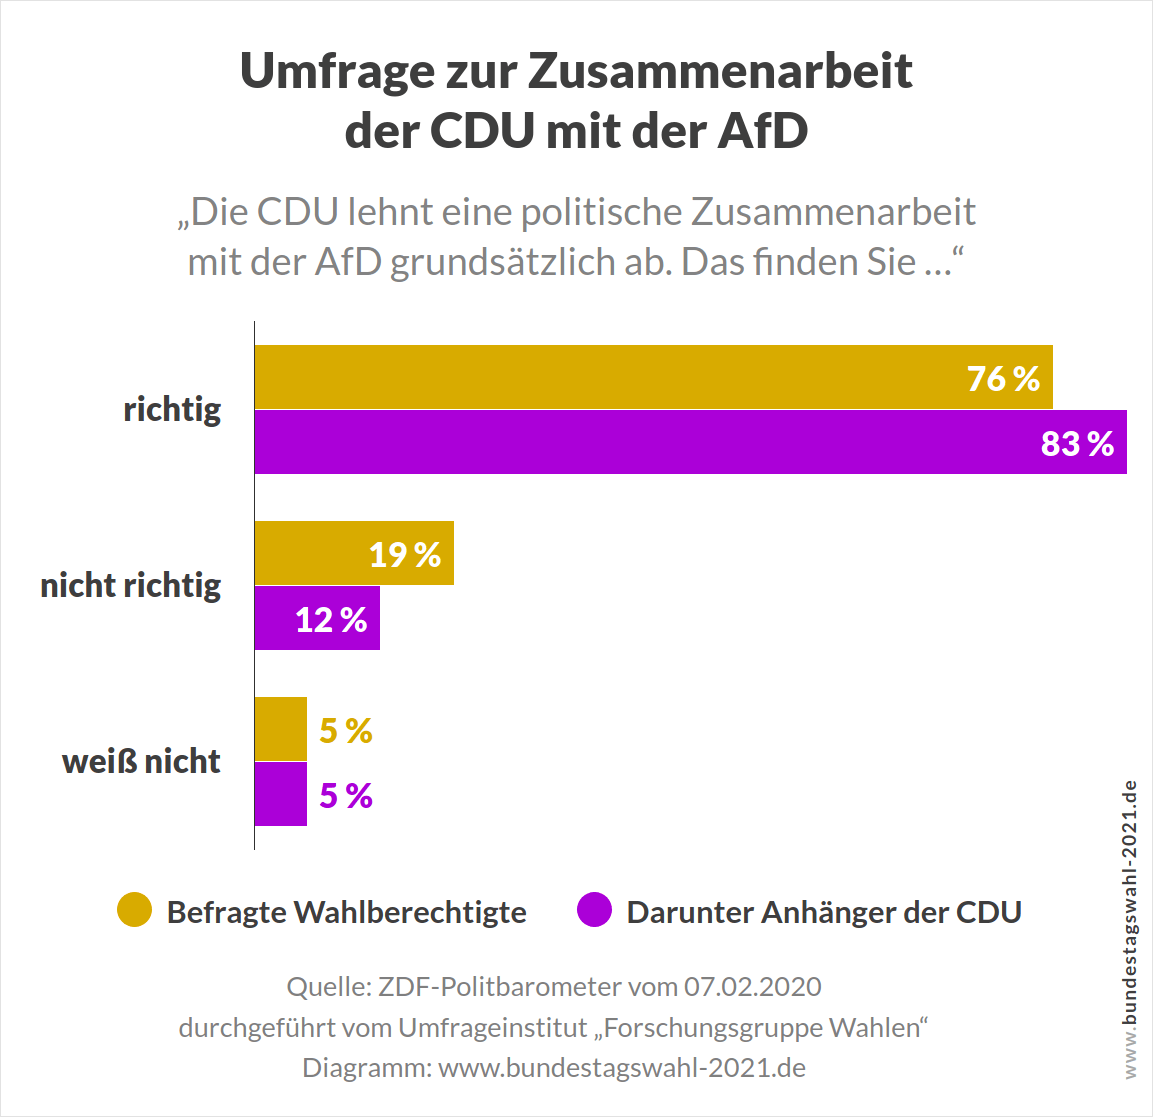 Umfrage zu mögliche Koalitionen zwischen CDU und AfD nach der Bundestagswahl